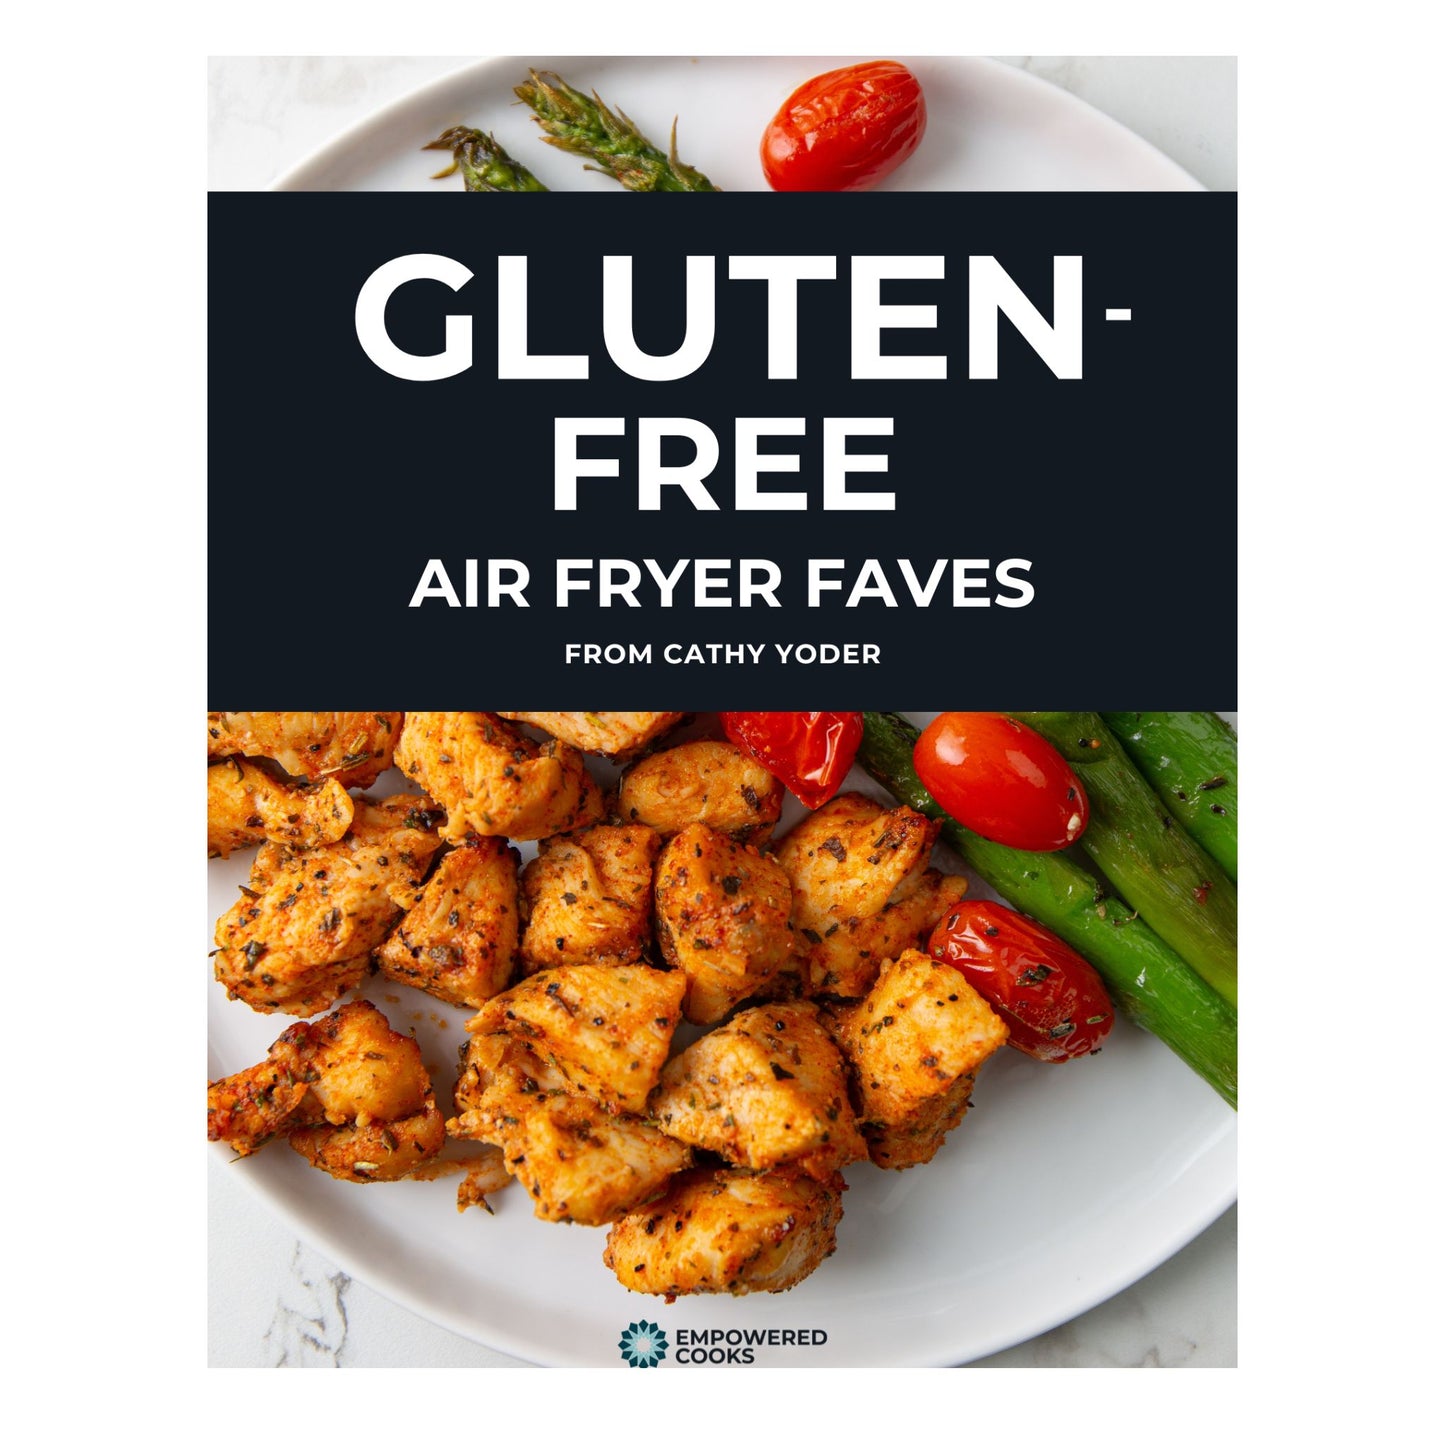 DIGITAL: 10 Gluten Free Air Fryer Faves